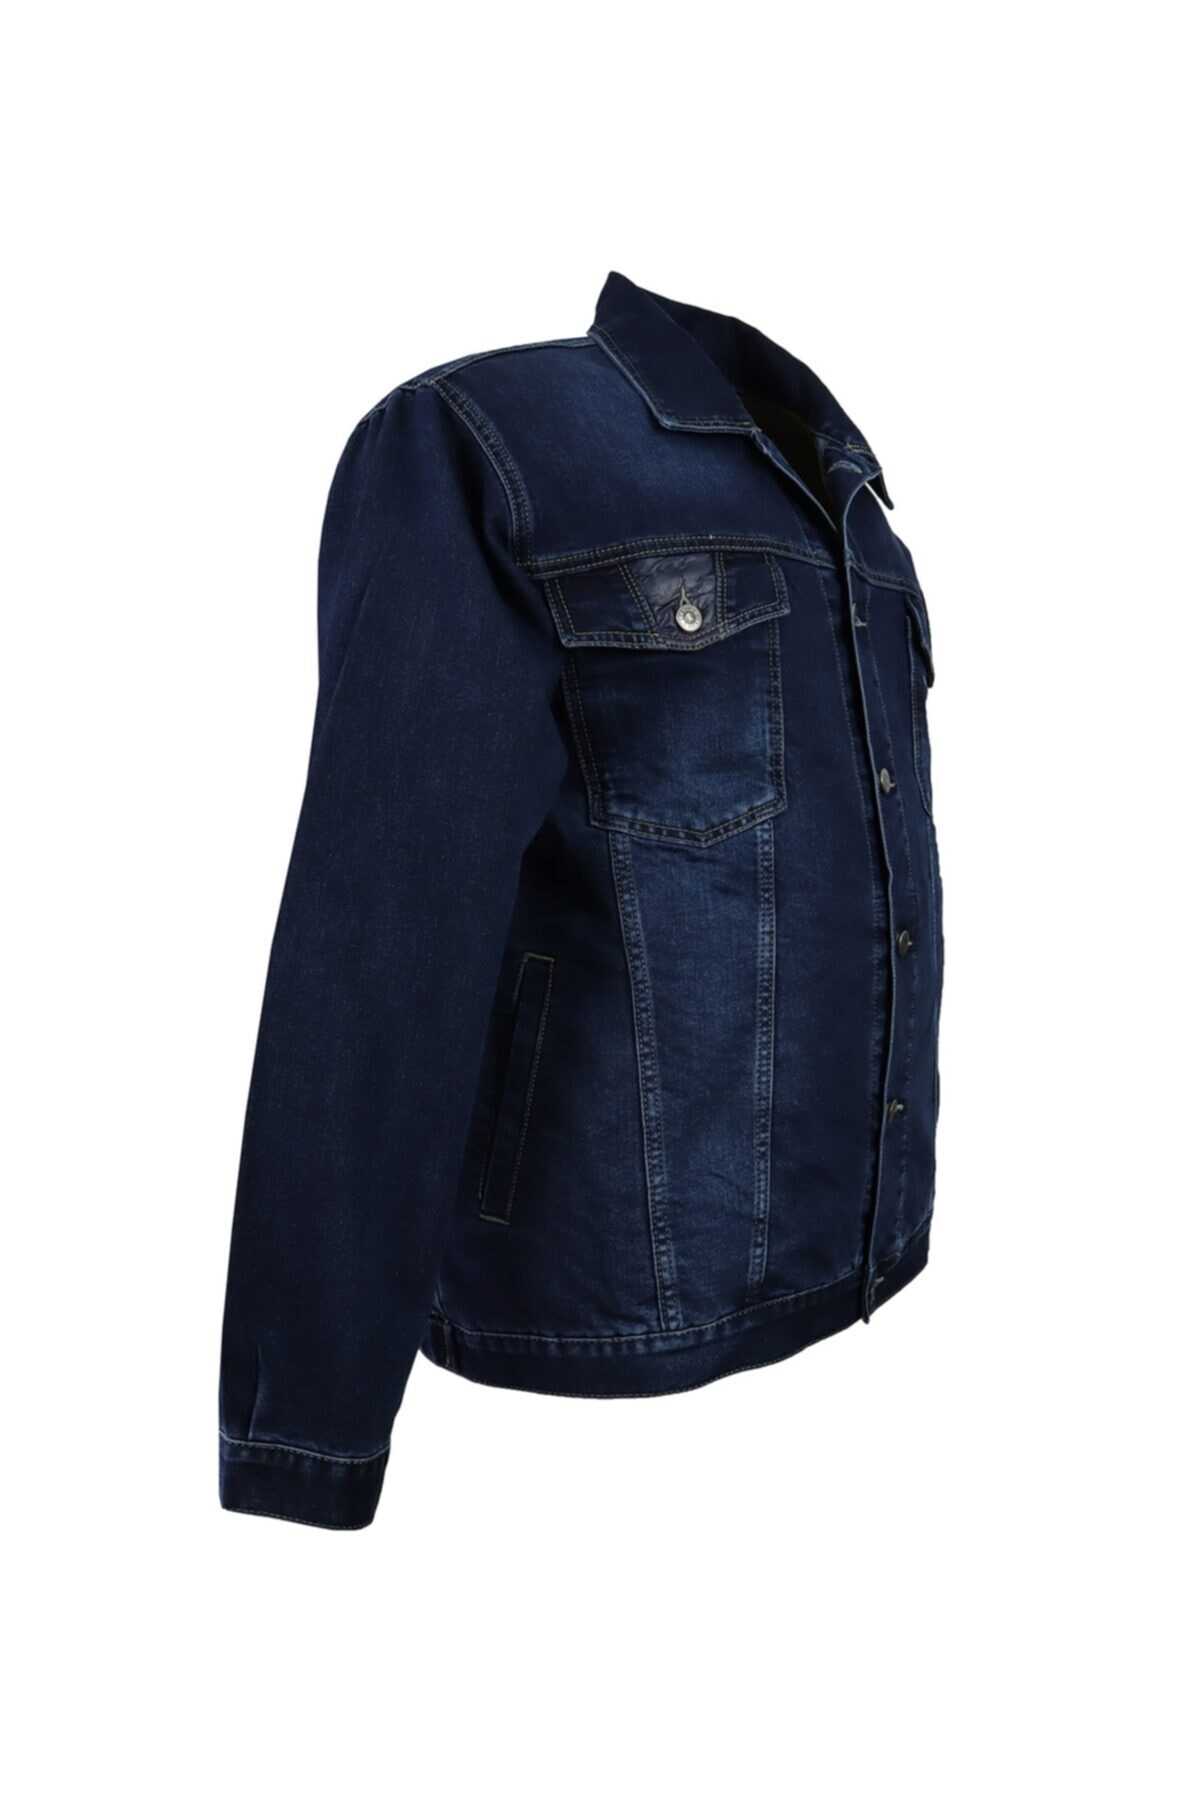 کت جین سایز بزرگ جیب دار دکمه ای مردانه آبی برند DEKONS